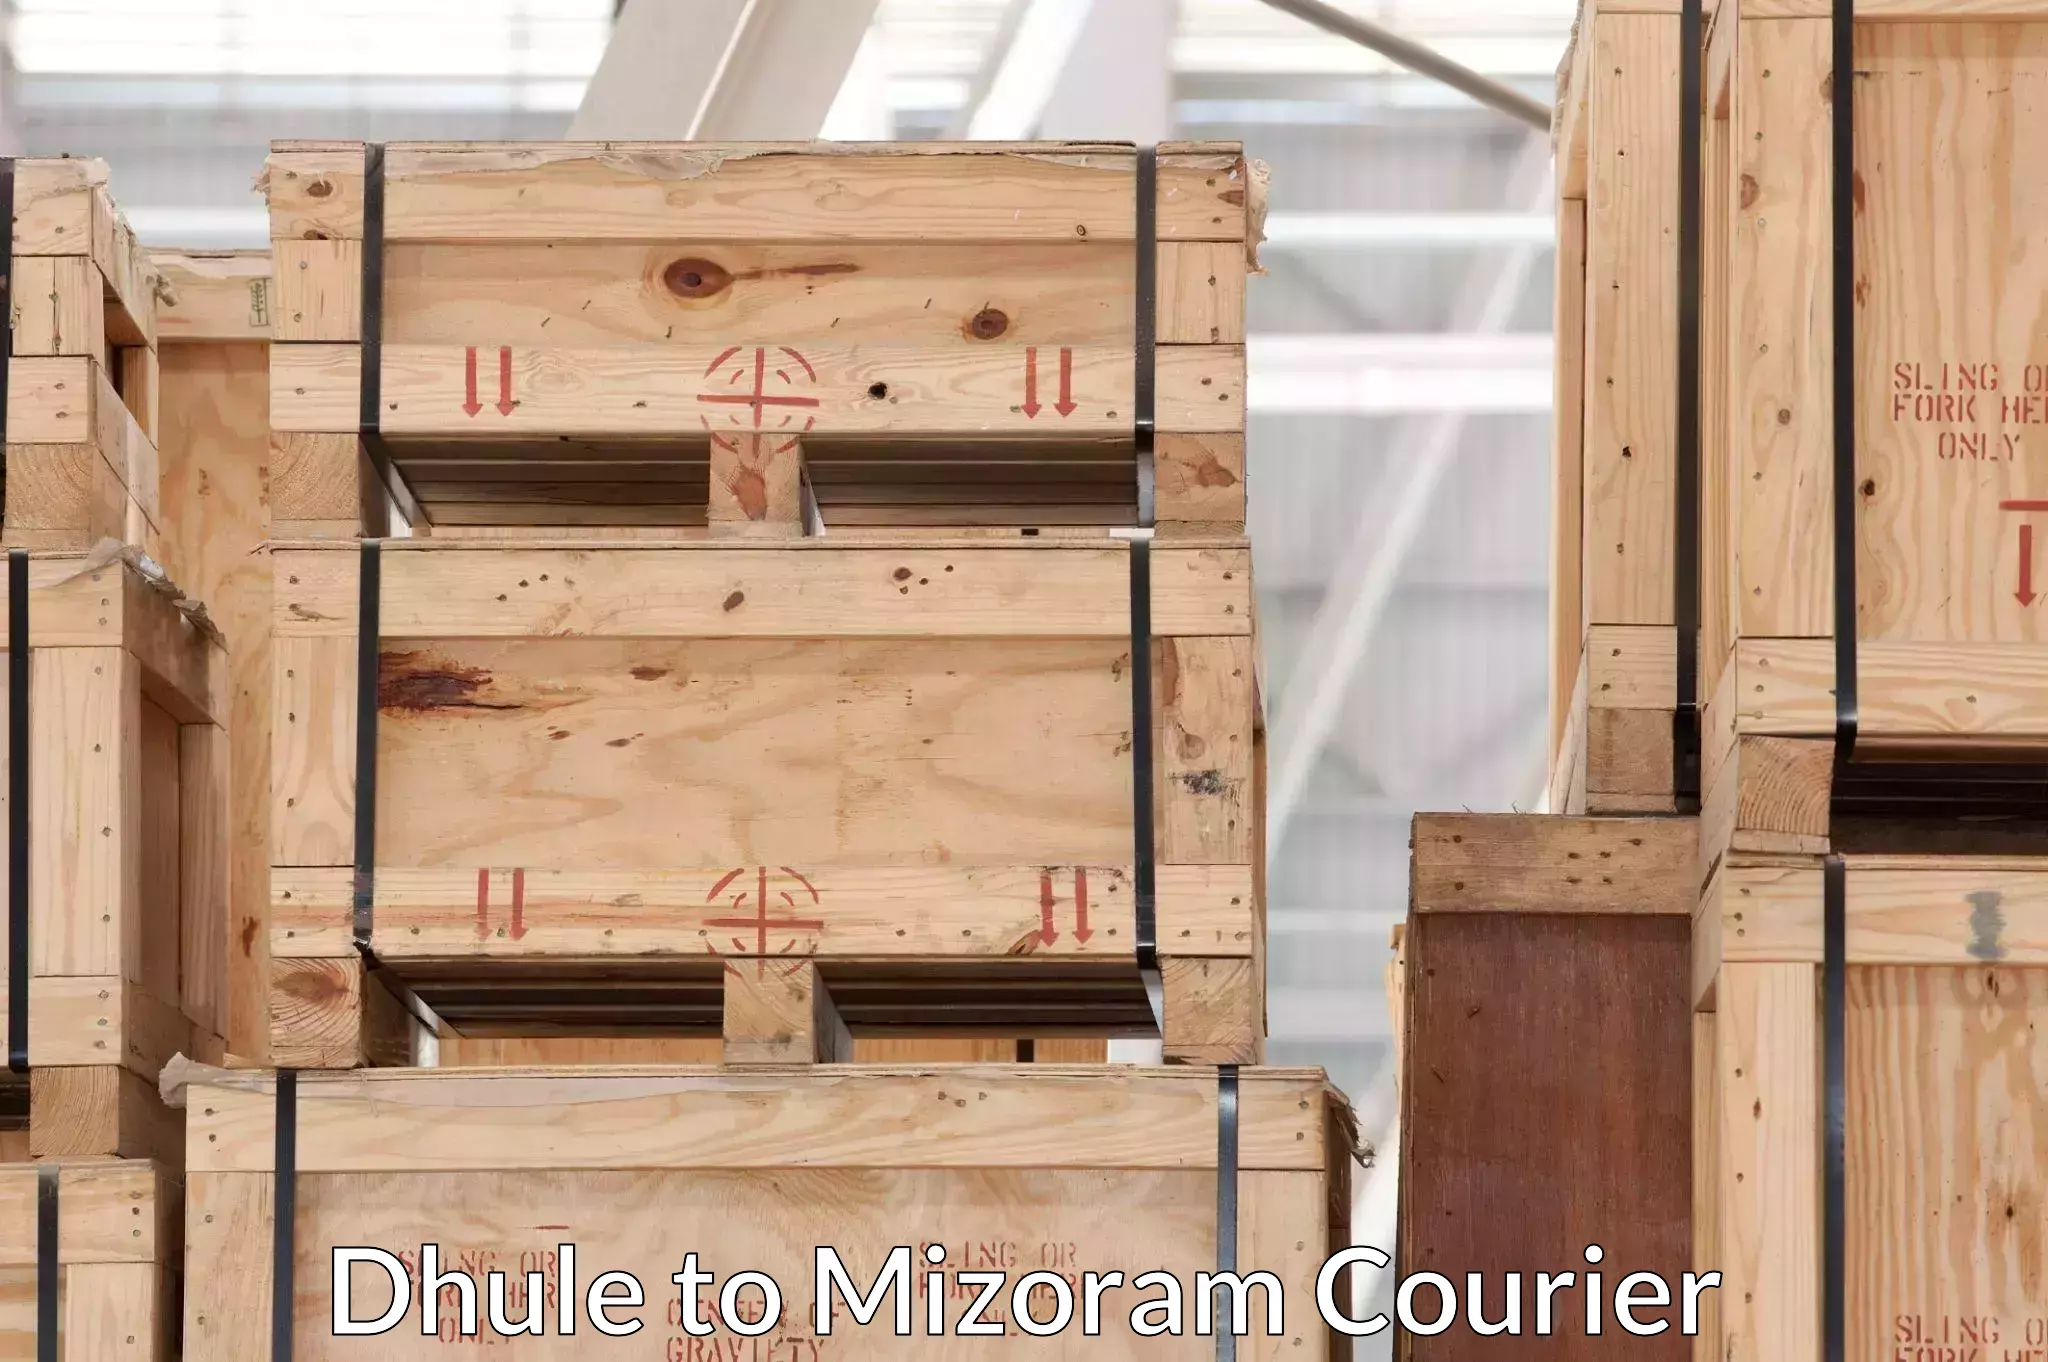 Nationwide furniture transport Dhule to Mizoram